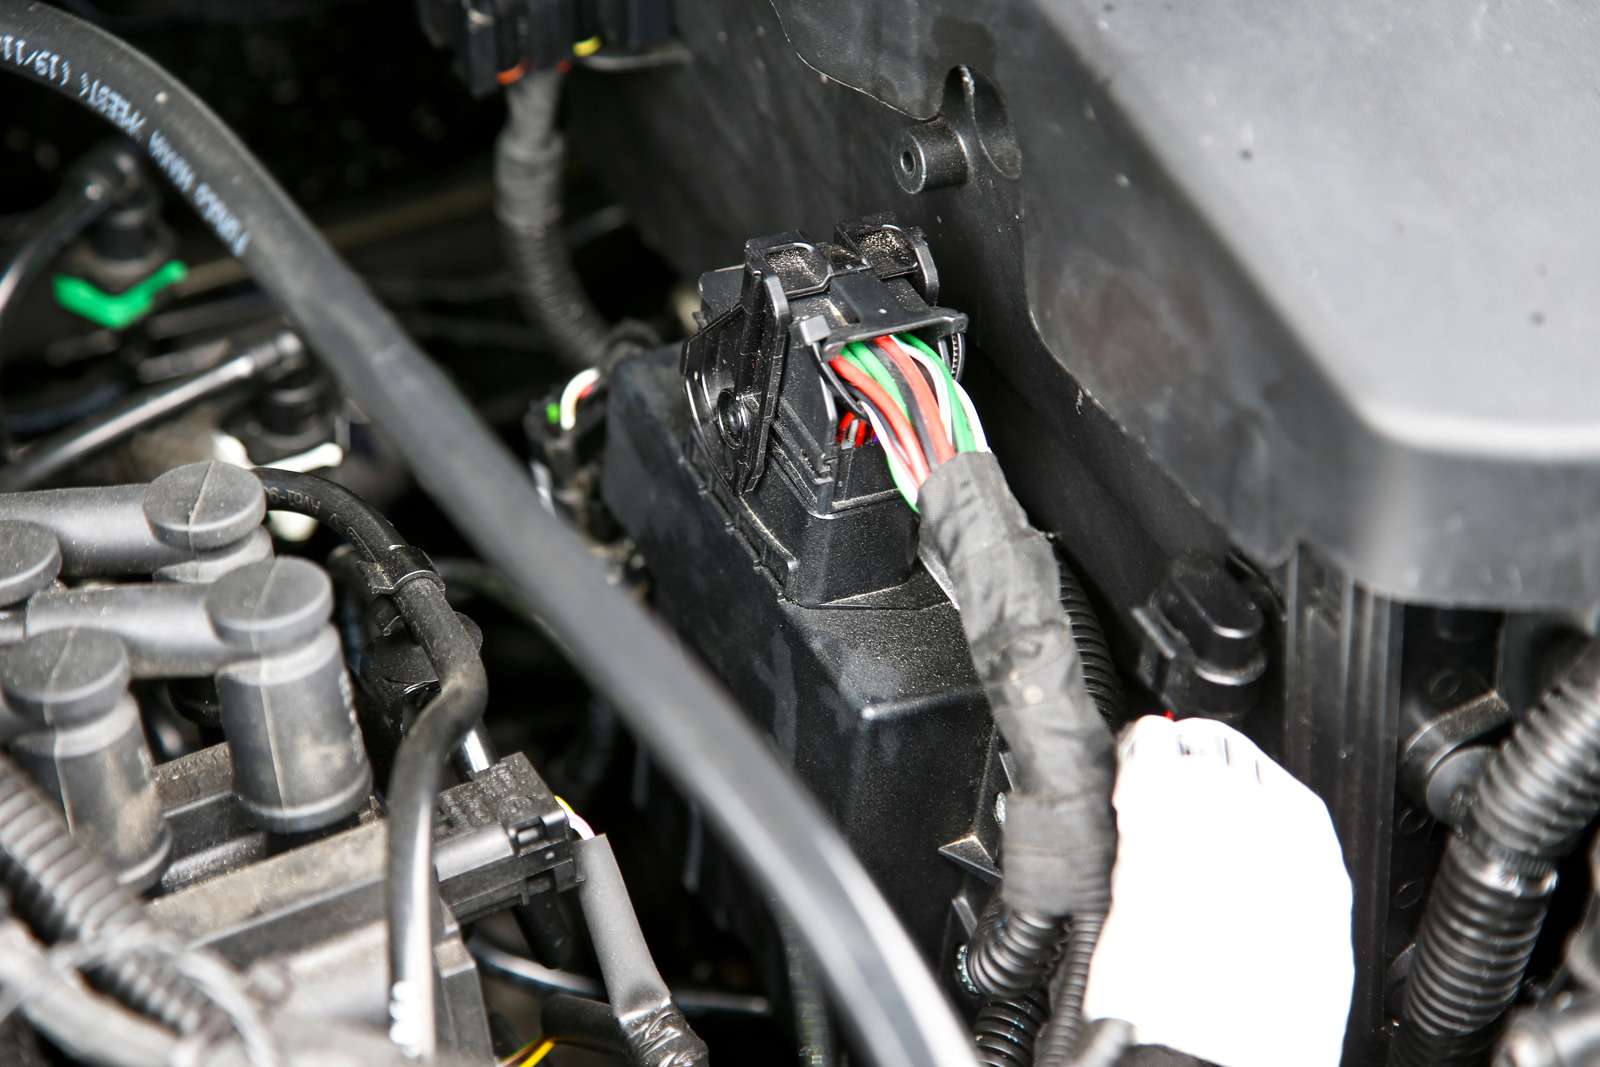 Слева от двигателя установлен дополнительный блок управления. У него есть собственный диагностический разъем, позволяющий, ко всему прочему, проверять давление газа в системе.